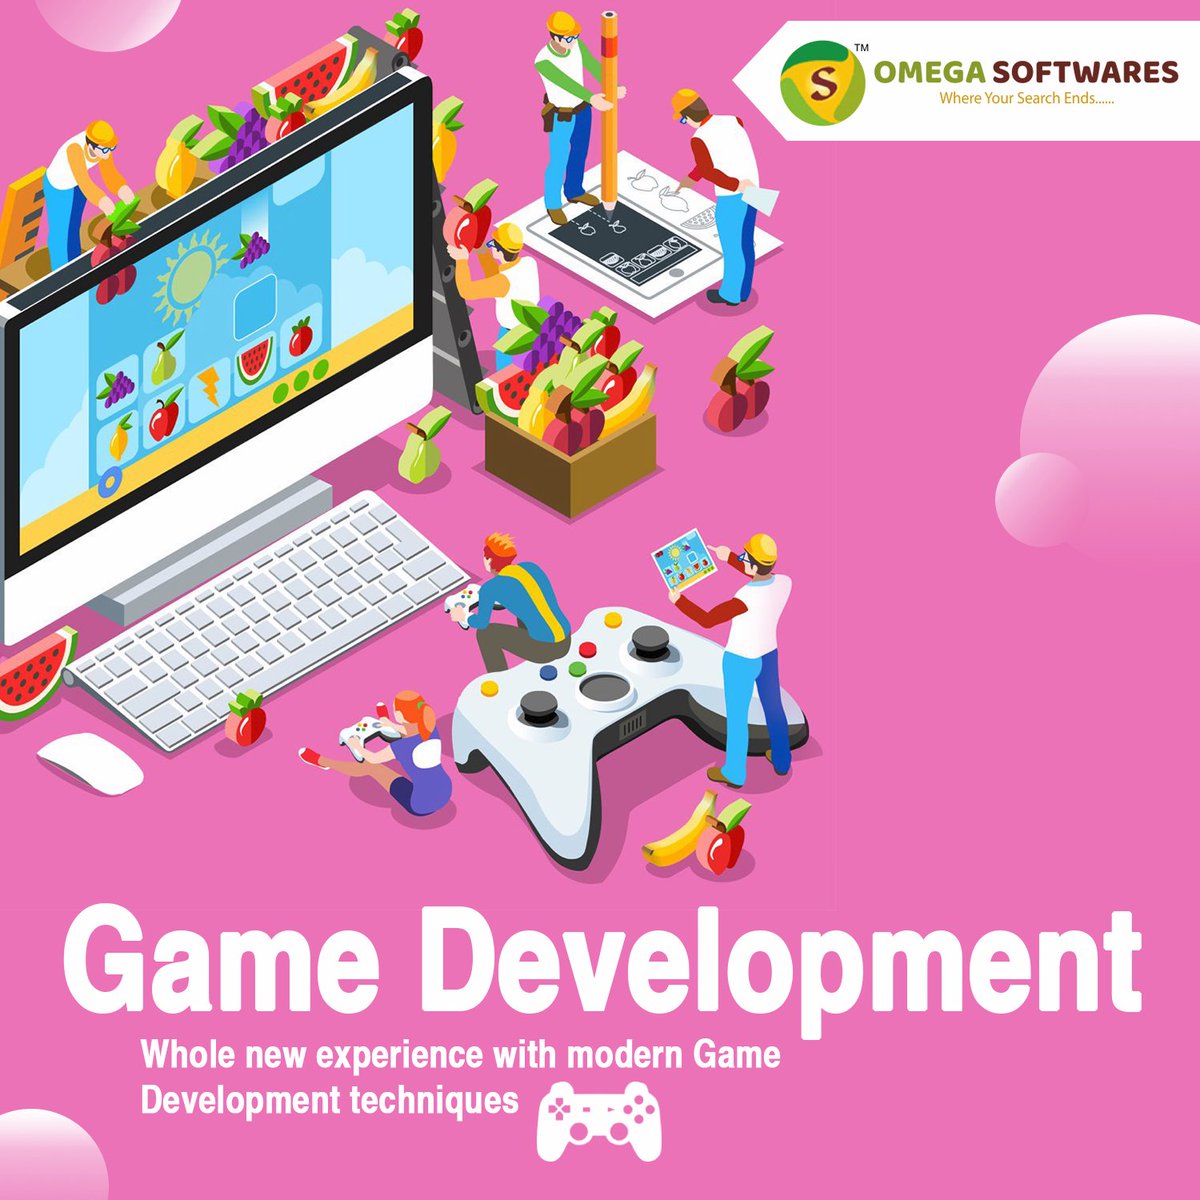 #gamedesigner #gameapp
#gamedevelopment #gamedeveloper #webdevelopment #2DGames #Unitydevelopers #gamedevelopers #Unitygamedev #3DGames #3DGameDevelopment #3Dgamedevelopers #softwaredevelopment #appdevelopment #DigitalMarketing